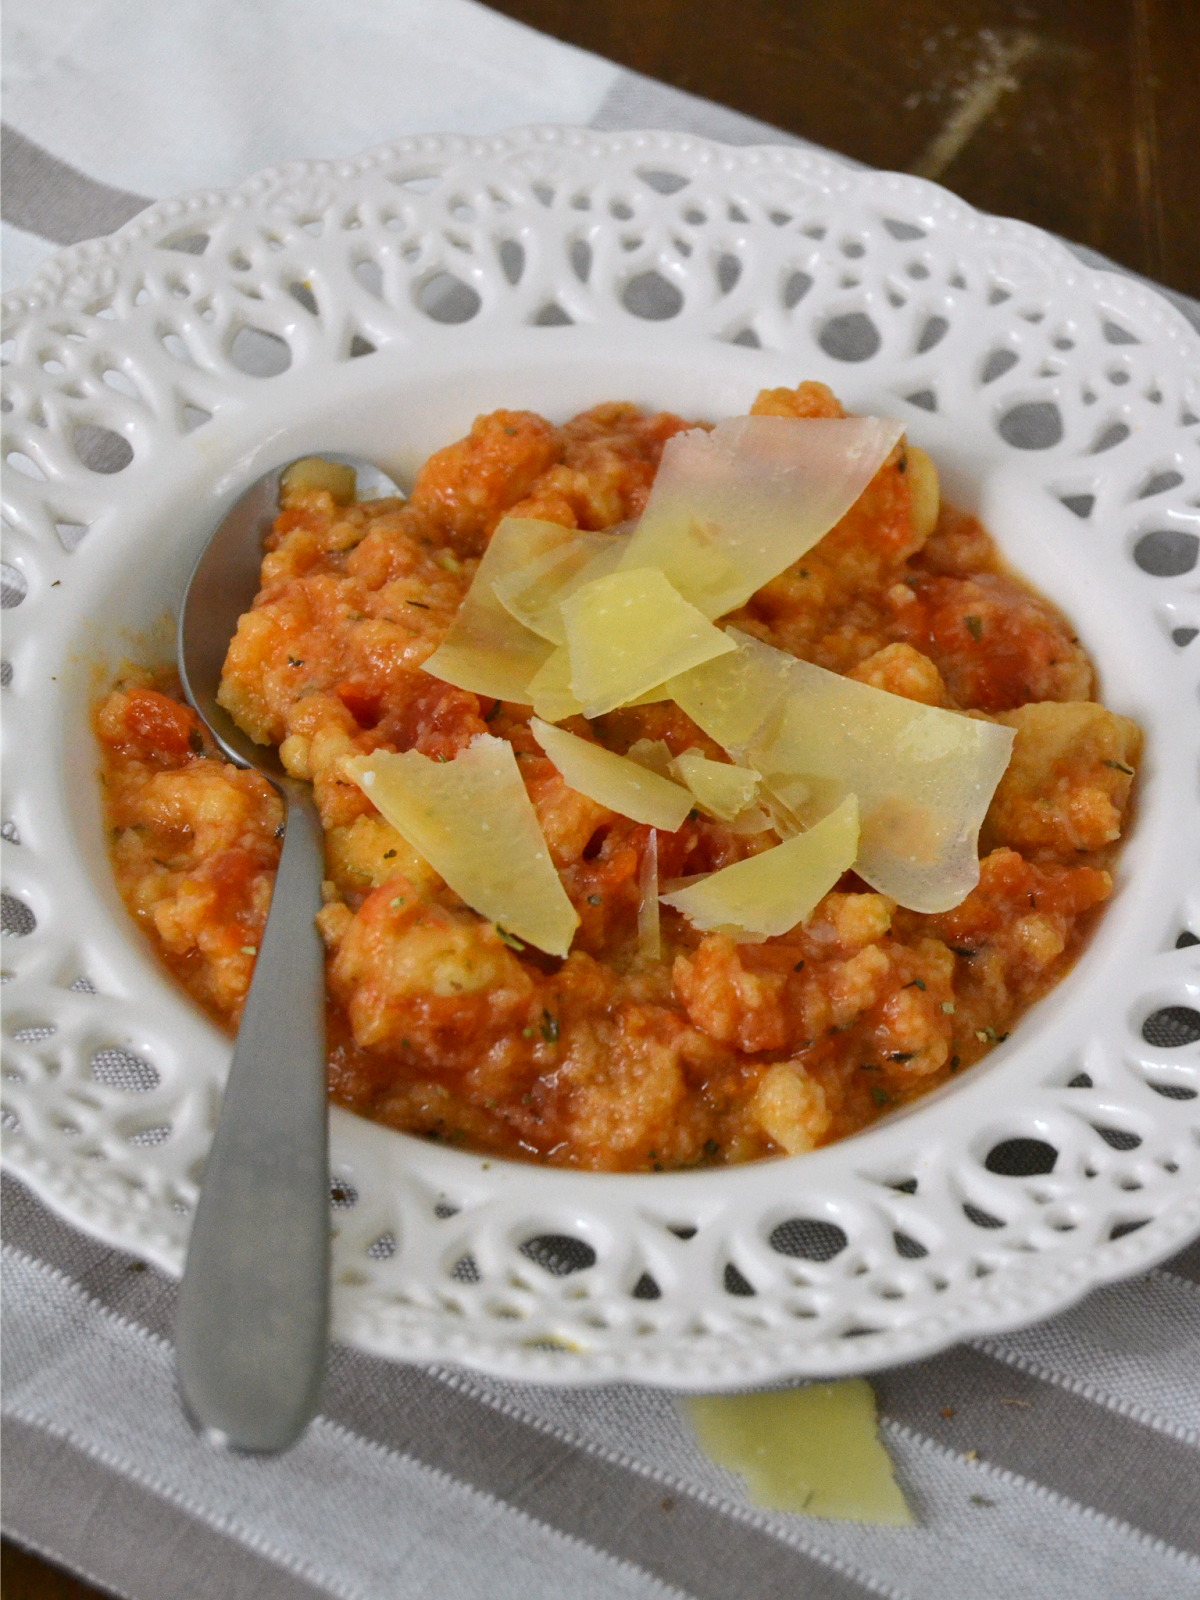 Sopa italiana de tomate y pan. Pappa al pomodoro